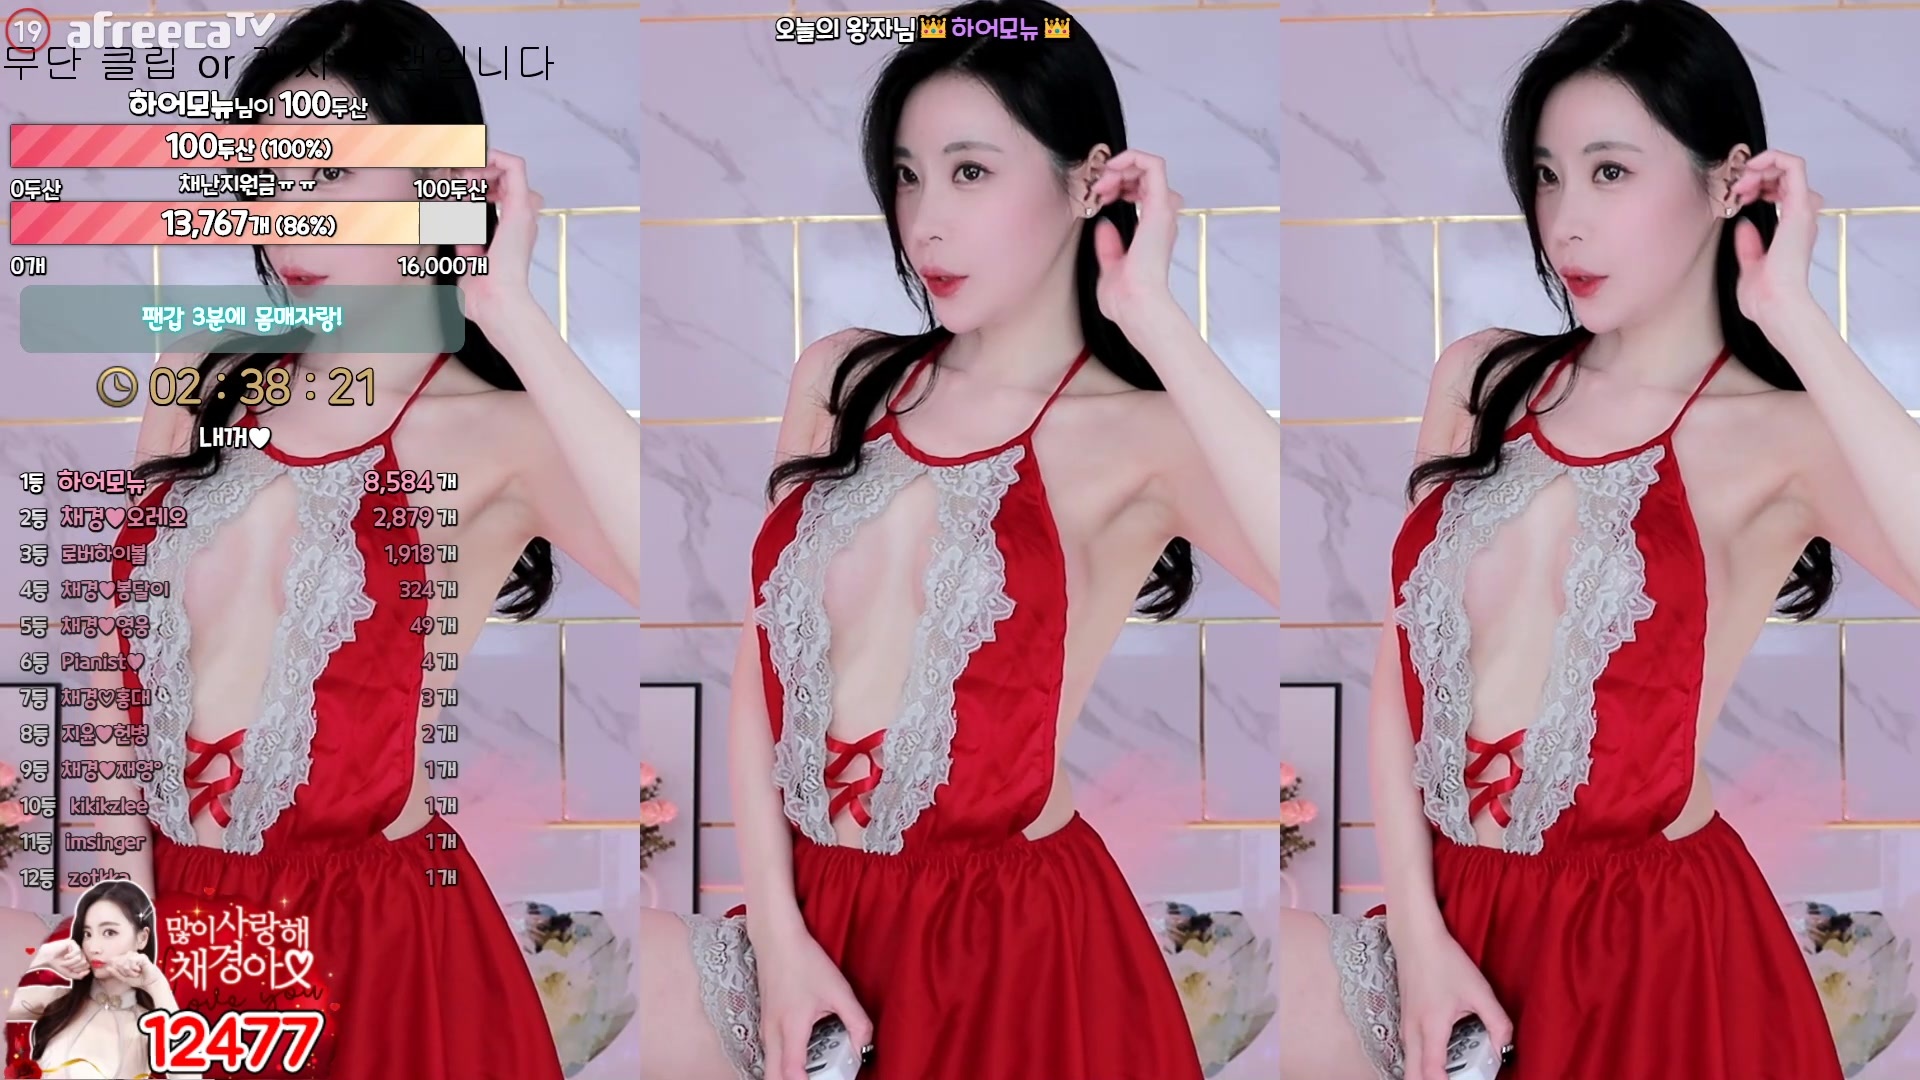 AfreecaTV Dance Girl @Kyo Tsai - Seductive Hot Dance Mini Collection (11)